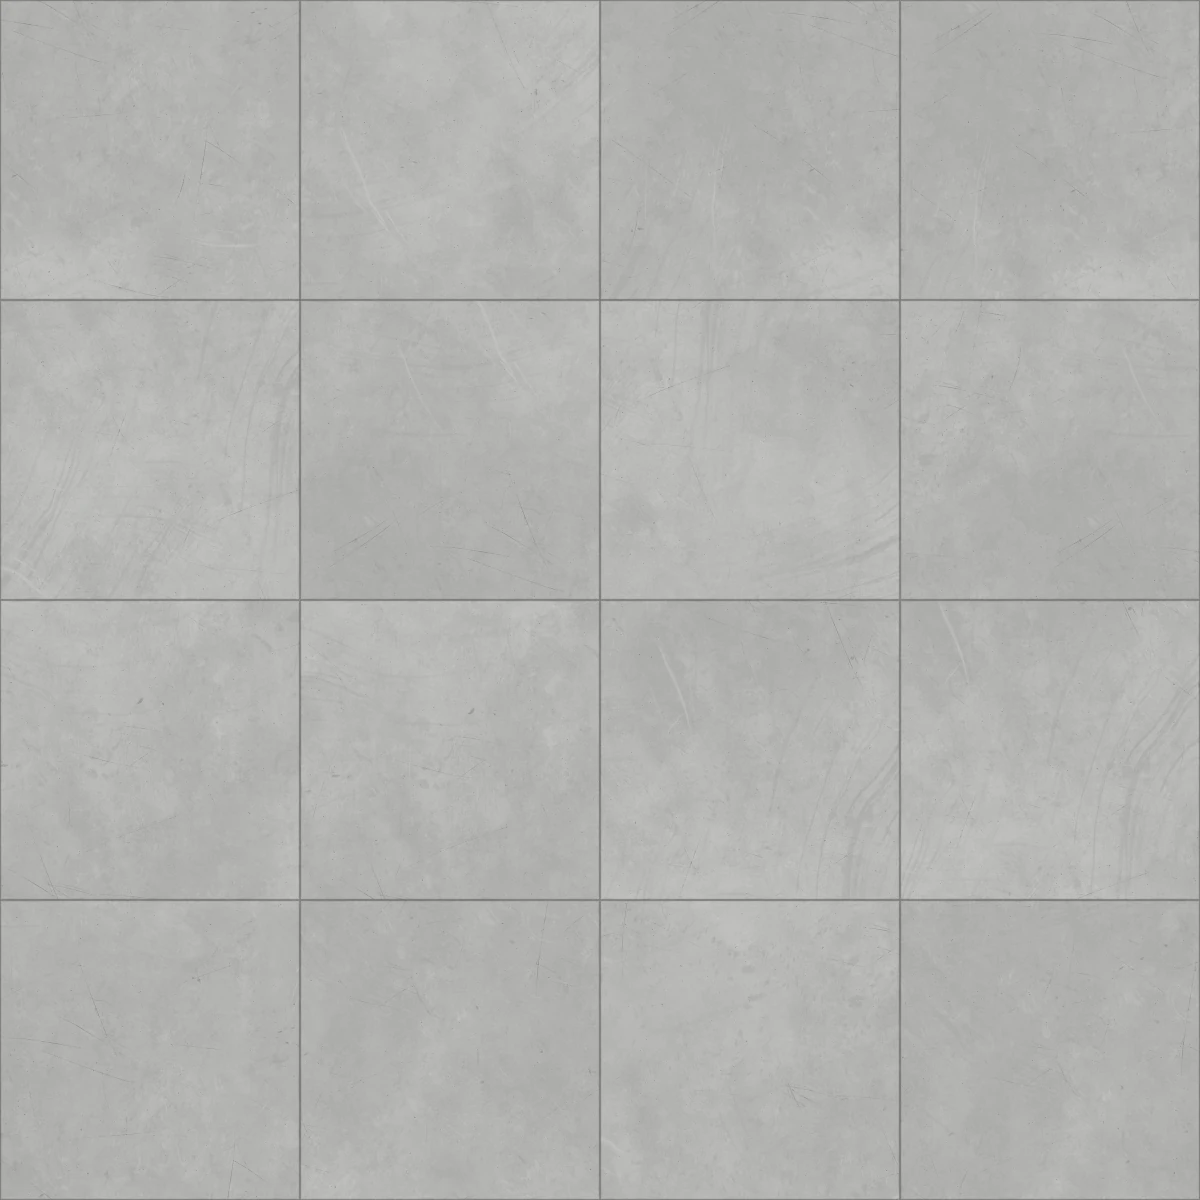 Concrete Tiles PBR Texture